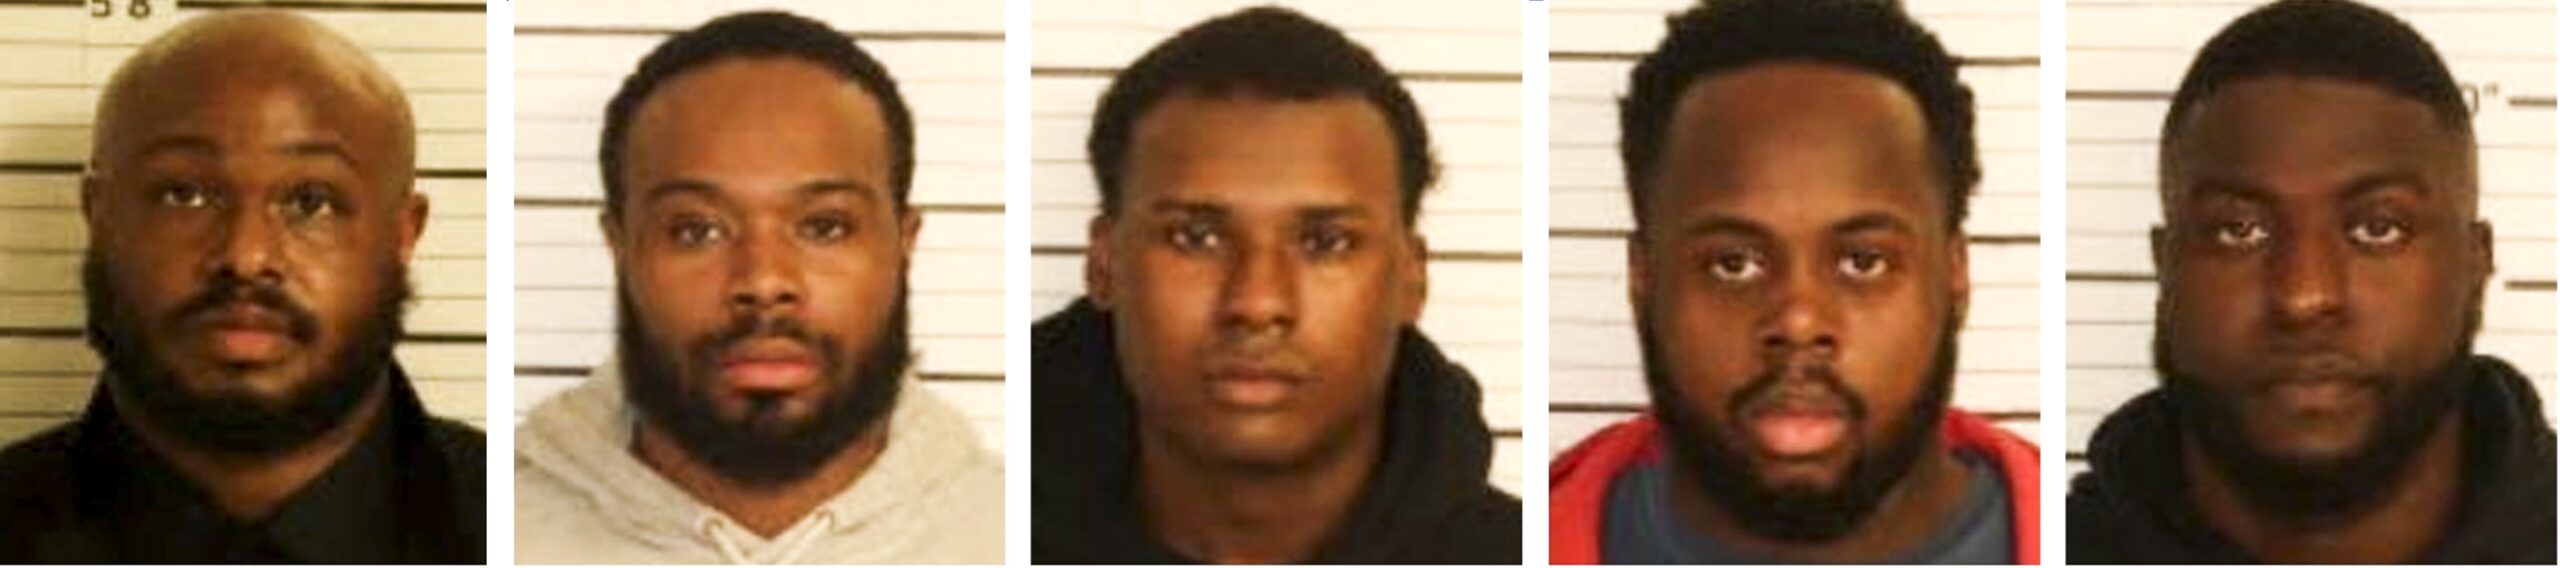 Los policías acusados de matar a un joven negro comparecerán en febrero ante un juez